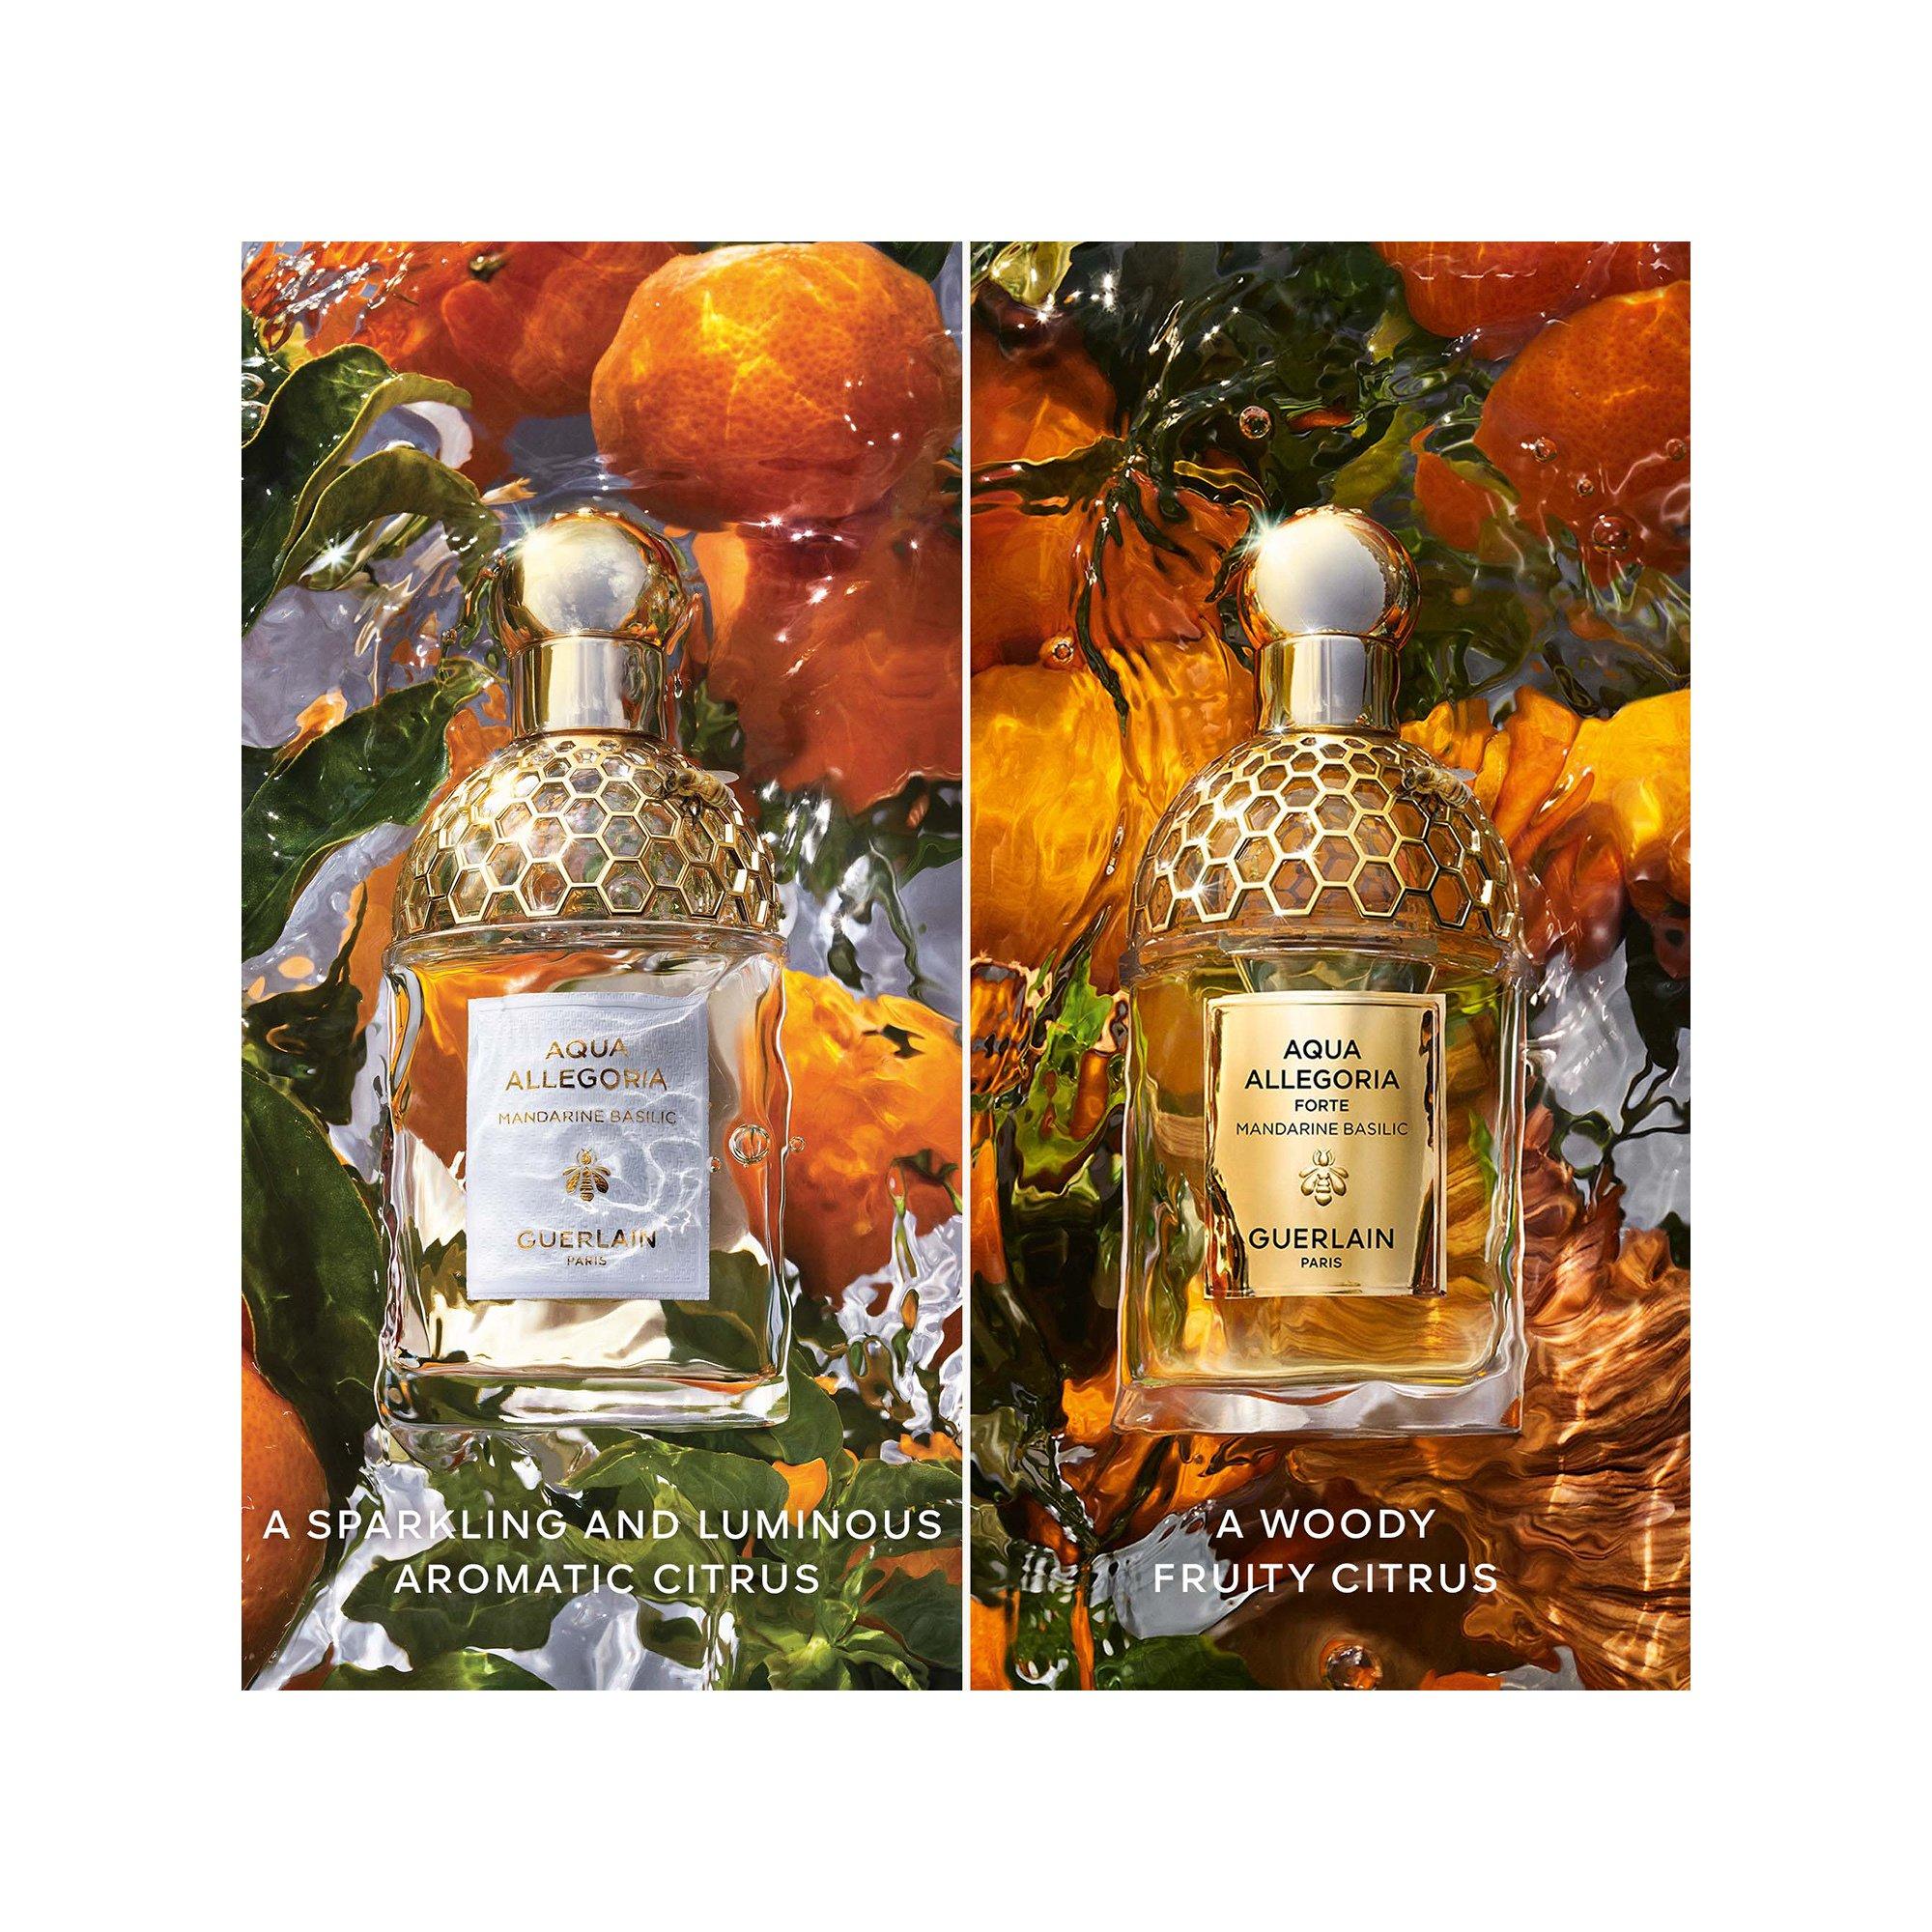 Guerlain  Aqua Allegoria Forte Mandarine Basilic Eau de Parfum 